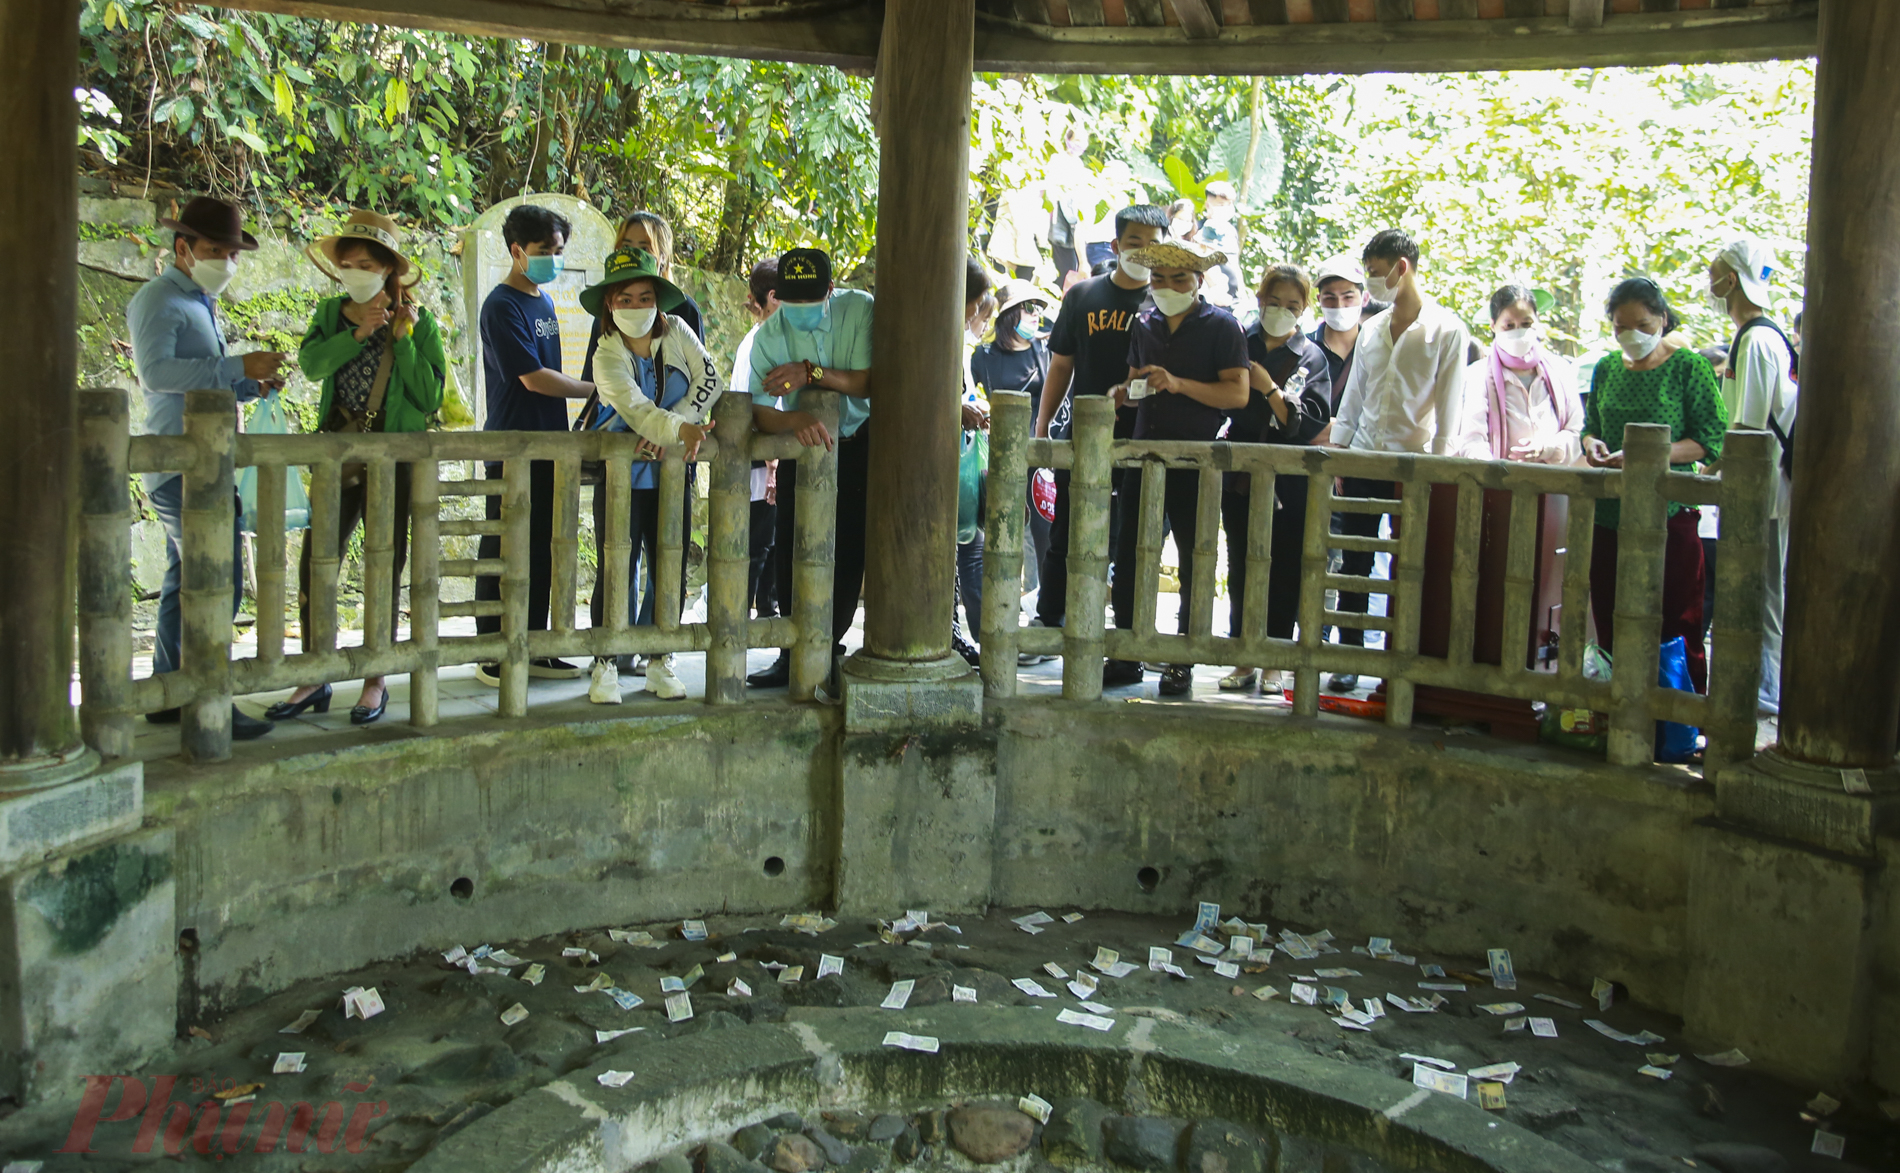  Người dân đua nhau thả tiền xuống giếng cổ phớt lờ biển báo quy định tại trong khu di tích Đền Hùng, Phú Thọ.